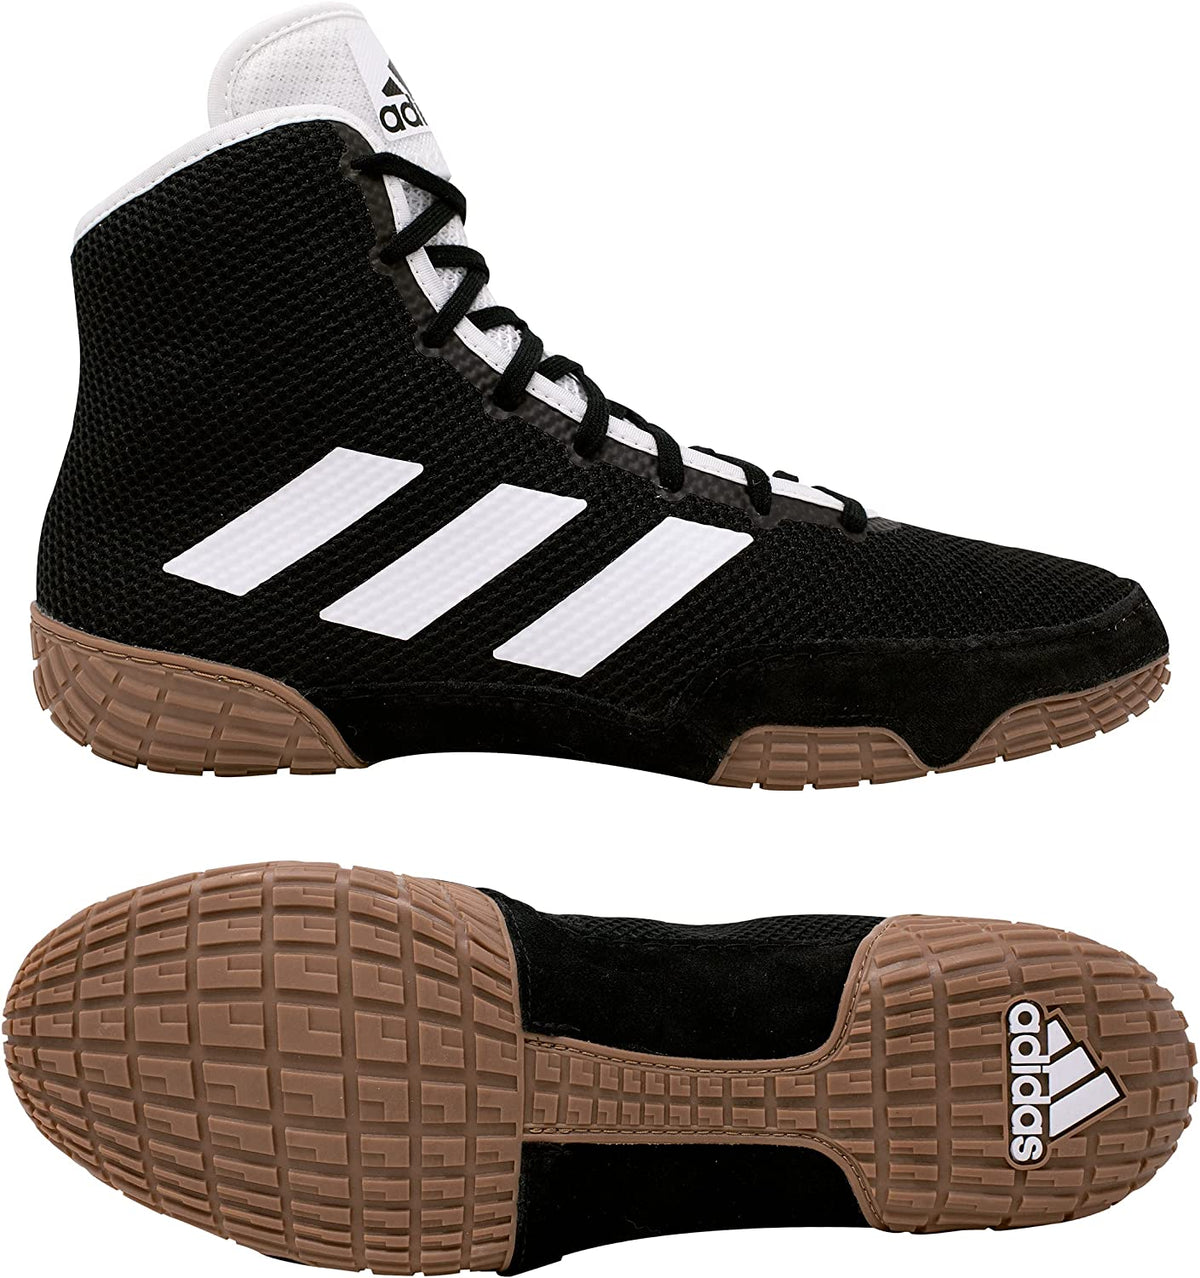 Buty zapaśnicze Adidas Tech-Fall w kolorze czarnym. Teraz w najlepszej cenie w Phantom Athletics . Buty zapaśnicze Adidas są jednymi z najbardziej poszukiwanych butów wśród zapaśników na całym świecie, ponieważ oferują najwyższą jakość w połączeniu z najwyższym komfortem. Solidna podeszwa zapewnia przyczepność na macie zapaśniczej. 